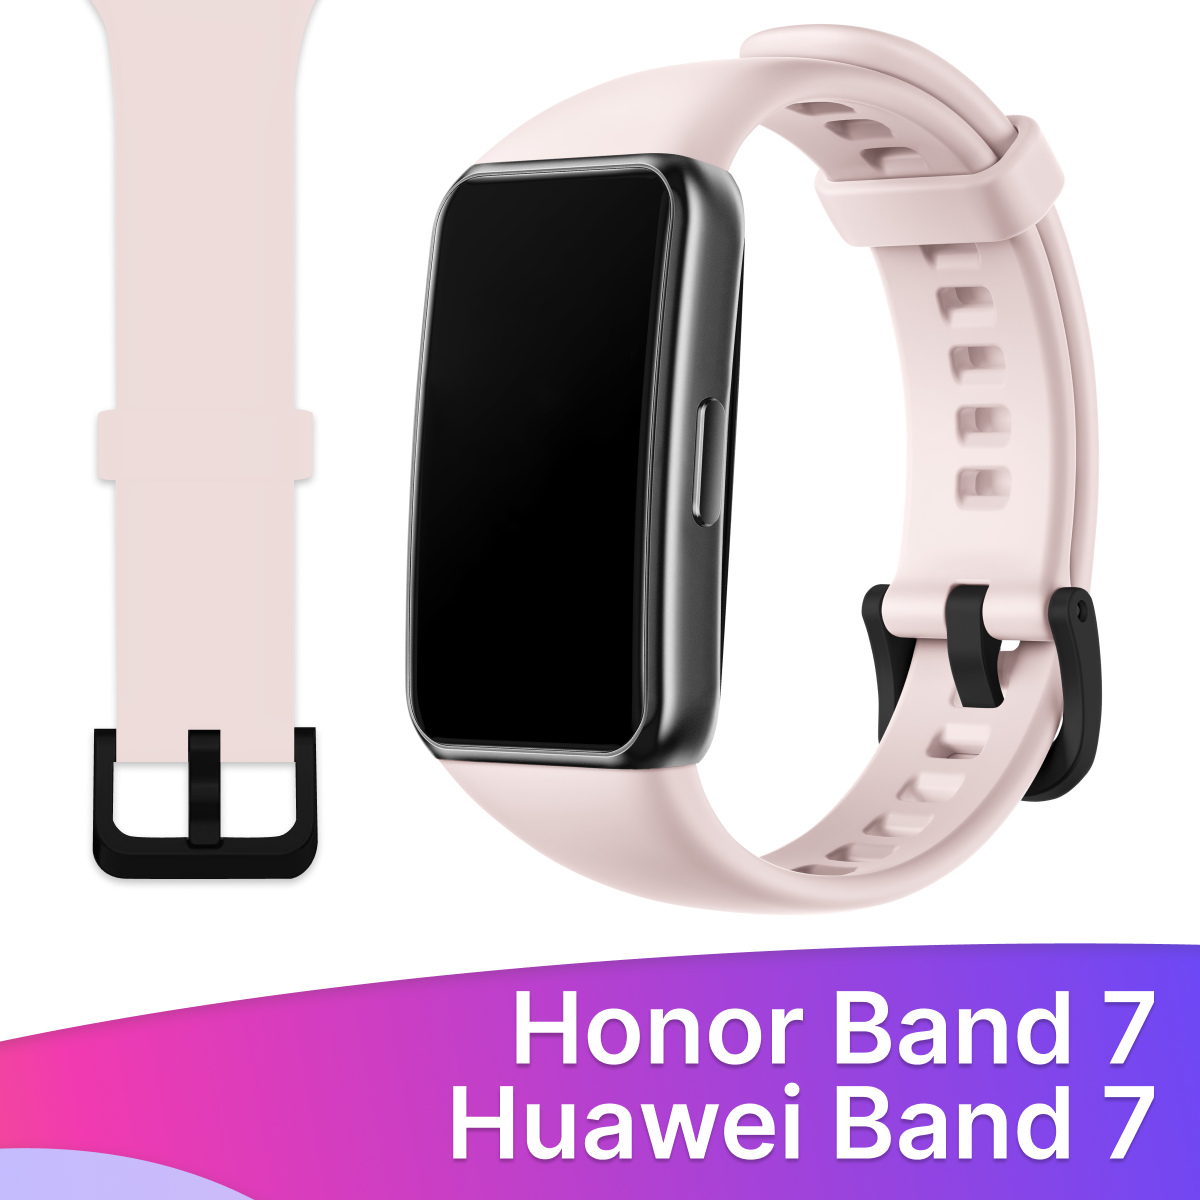 Силиконовый ремешок для Honor Band 7 и Huawei Band 7 / Сменный браслет для умных смарт часов / Фитнес трекера Хонор и Хуавей Бэнд 7, Розовый